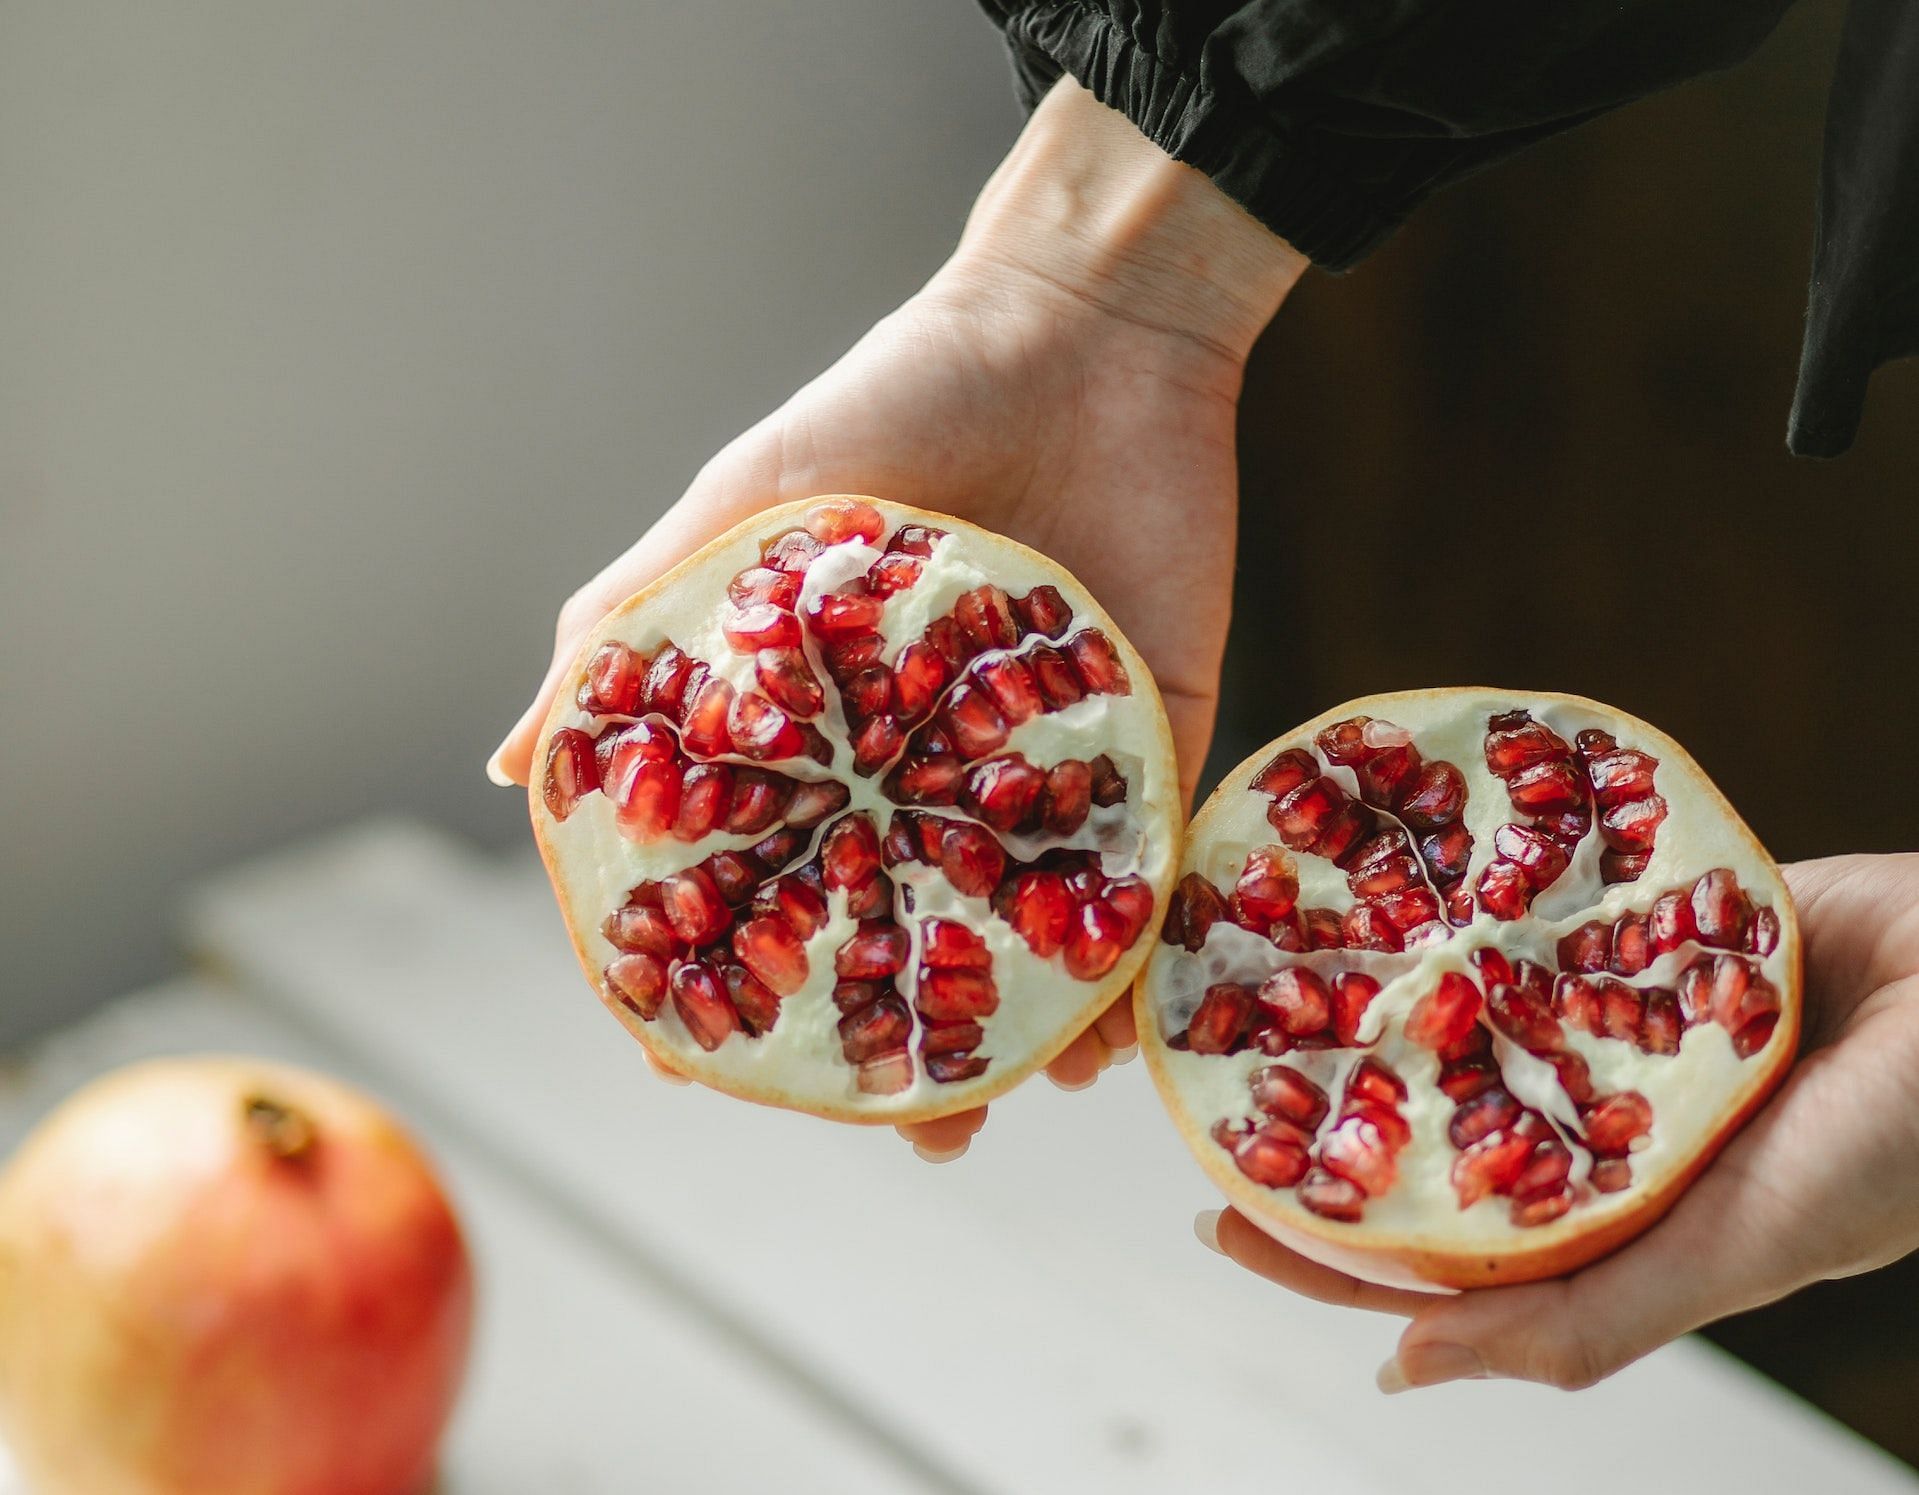 The fruit peel can detoxify the body. (Photo via Pexels/Any Lane)